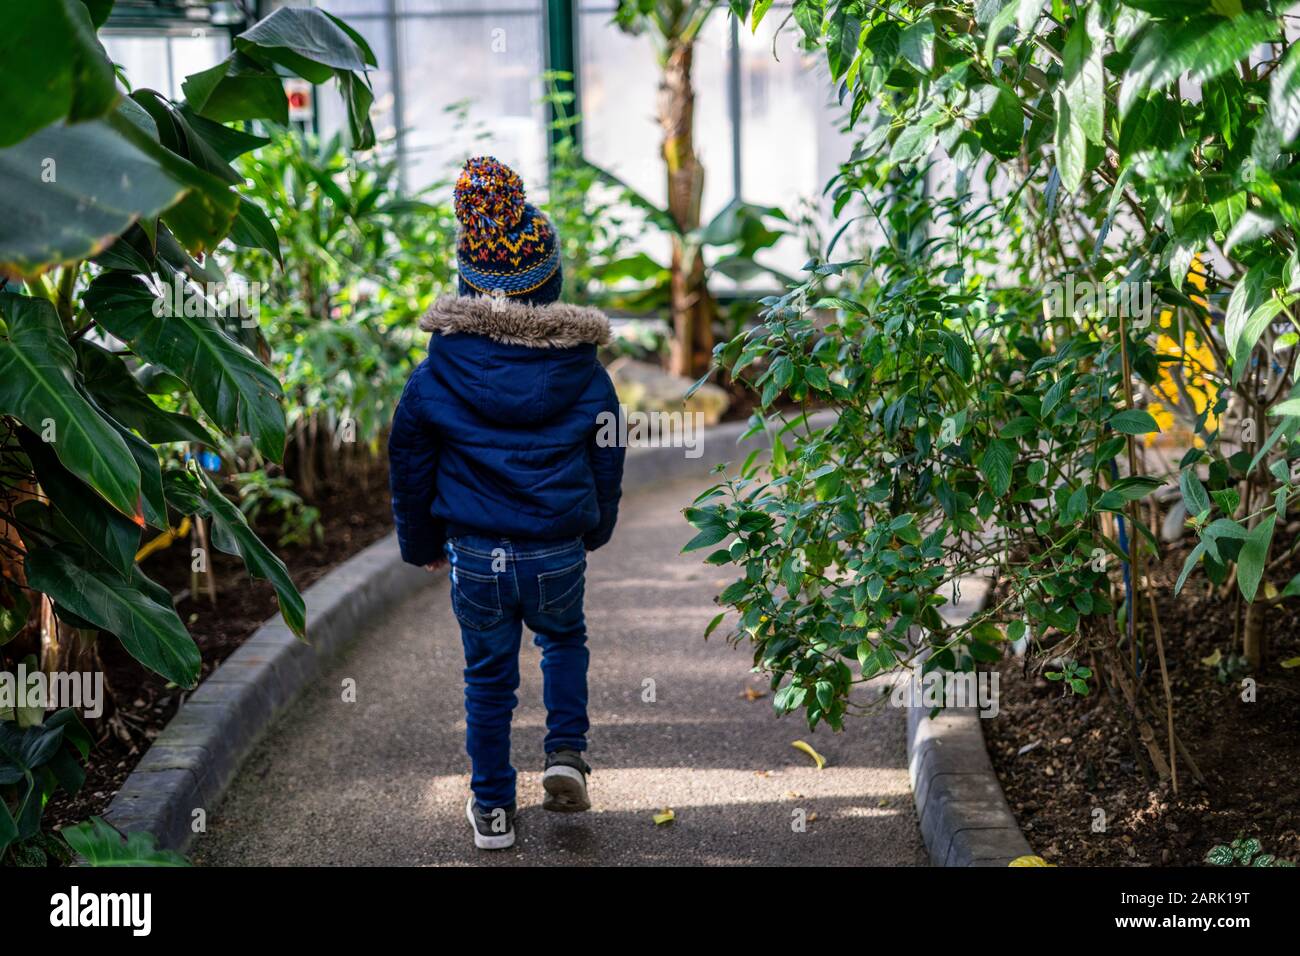 Un ragazzino di abbigliamento invernale che cammina attraverso un sentiero circondato da verdi alberi tropicali Foto Stock